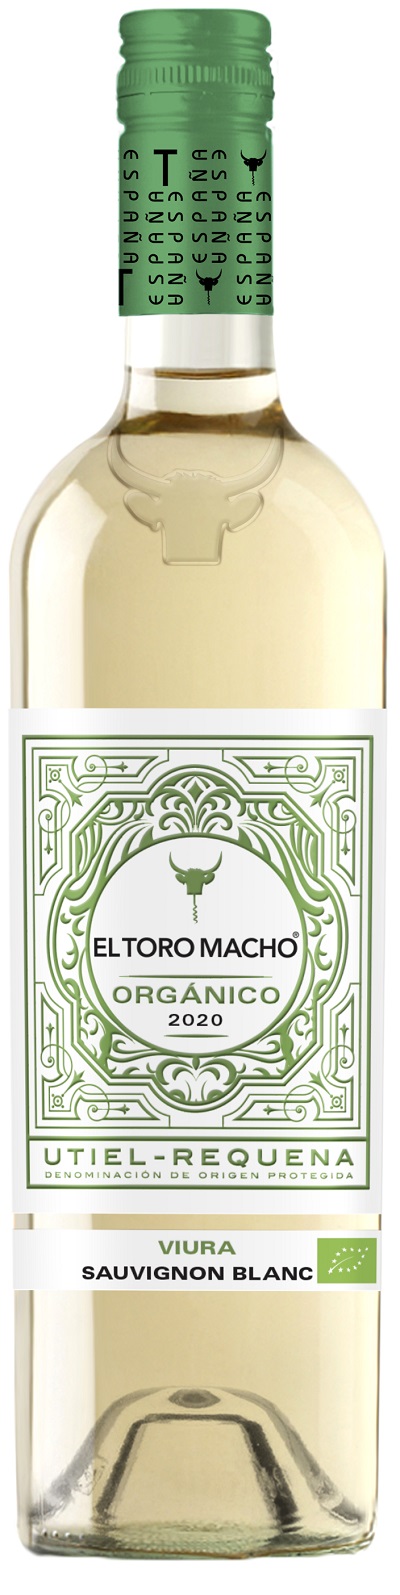 el-toro-macho-organico-viura-sauvignon-blanc-2020